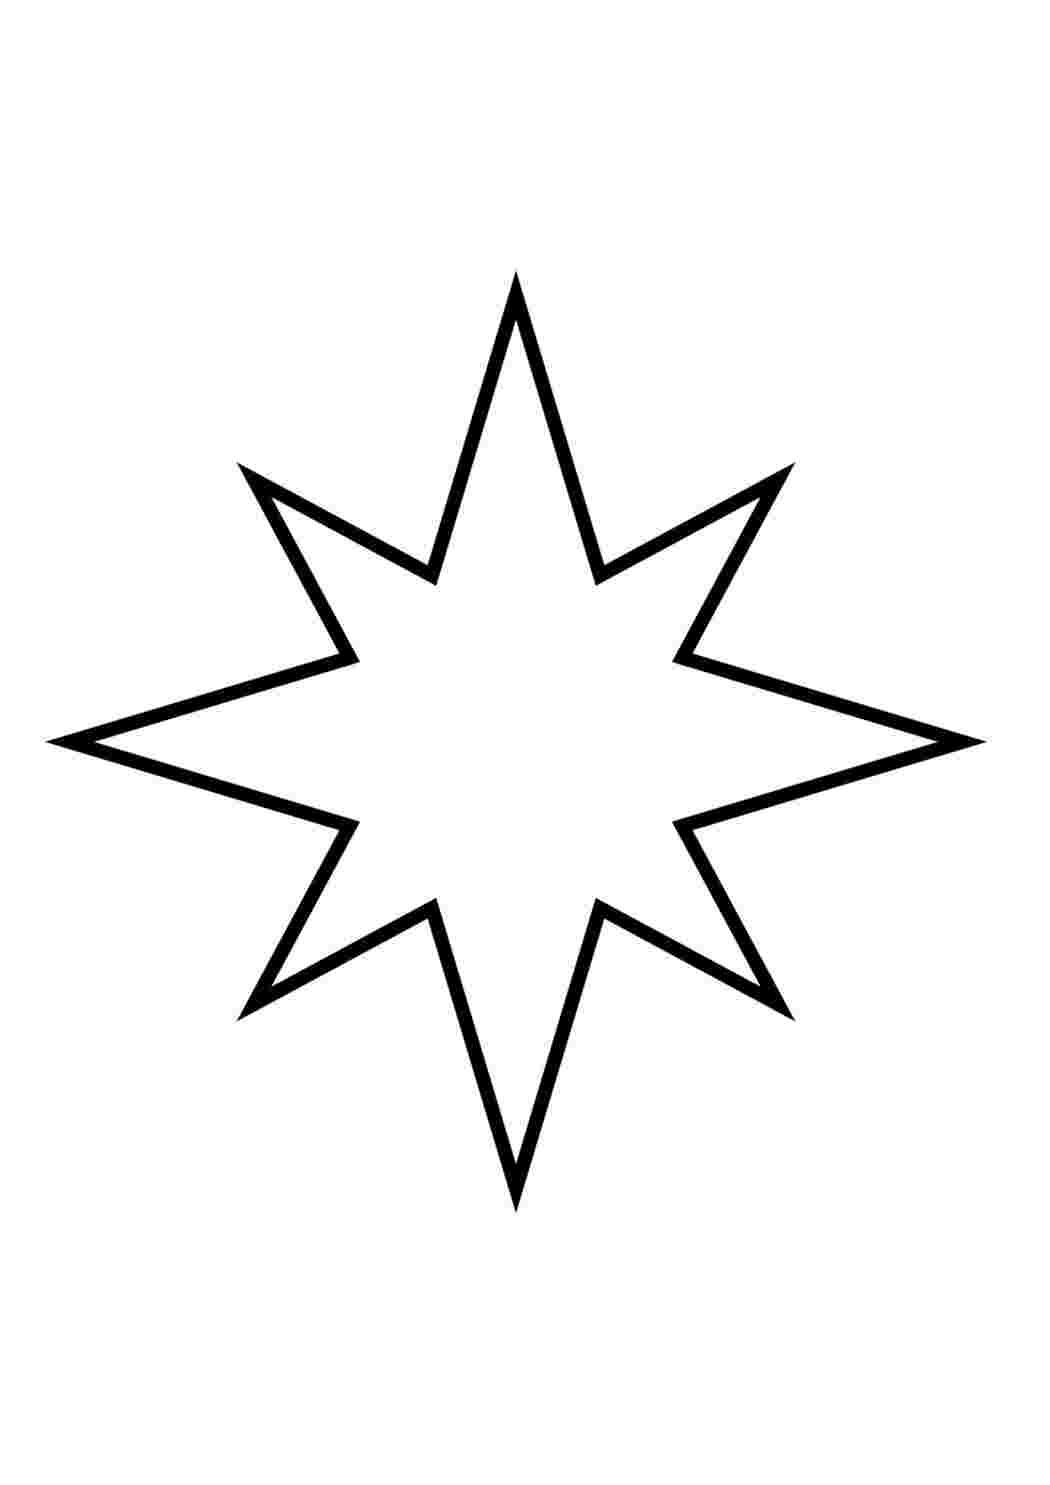 Раскраски Контуры шаблоны звезды для вырезания аппликации или поделок скачать и распечатать раскраску звезды онлайн бесплатно